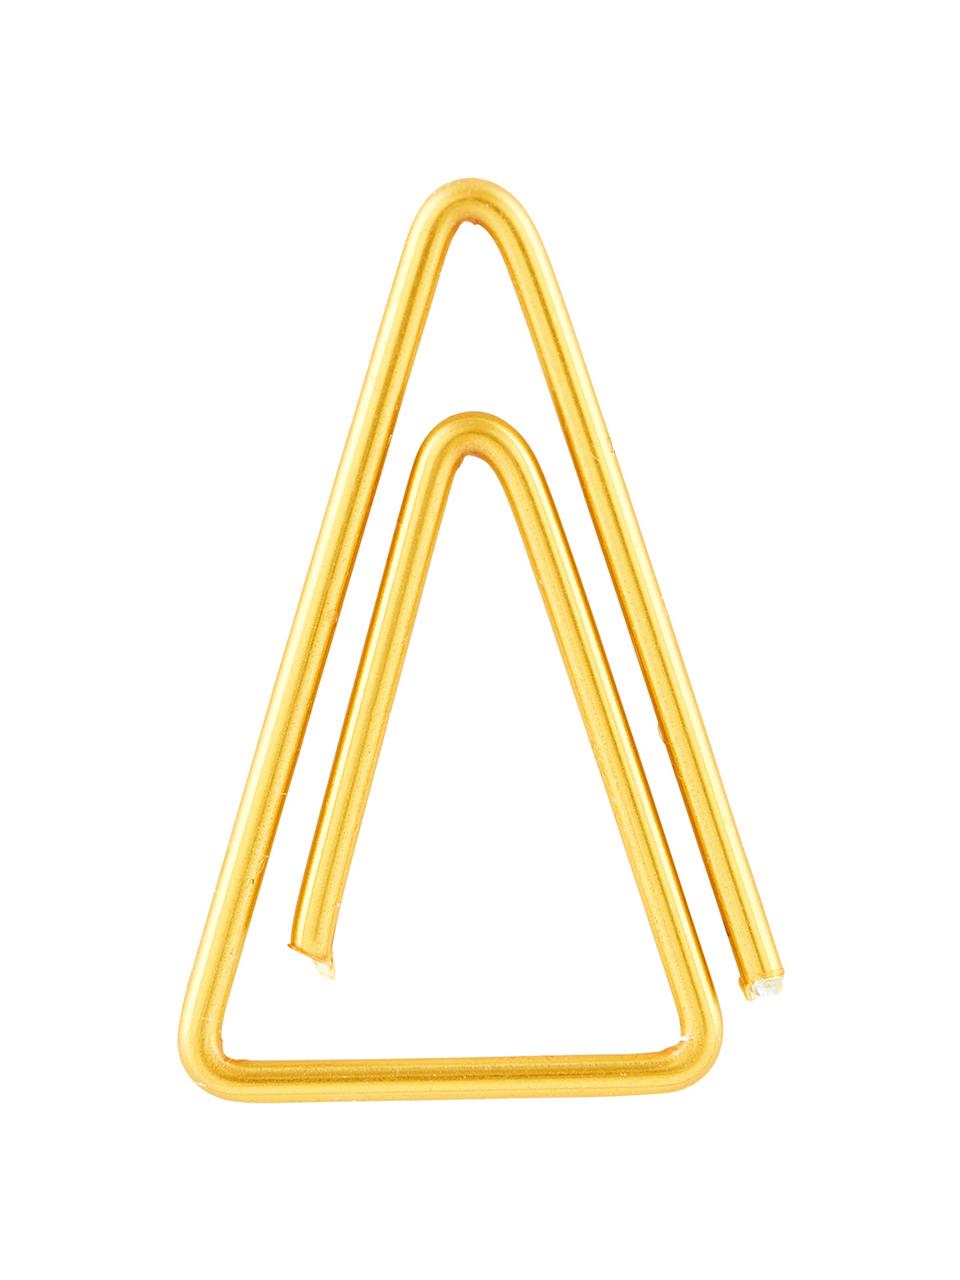 Graffette Triangle 20 pz, Acciaio inossidabile ottonato, Ottone, Lung. 3 cm